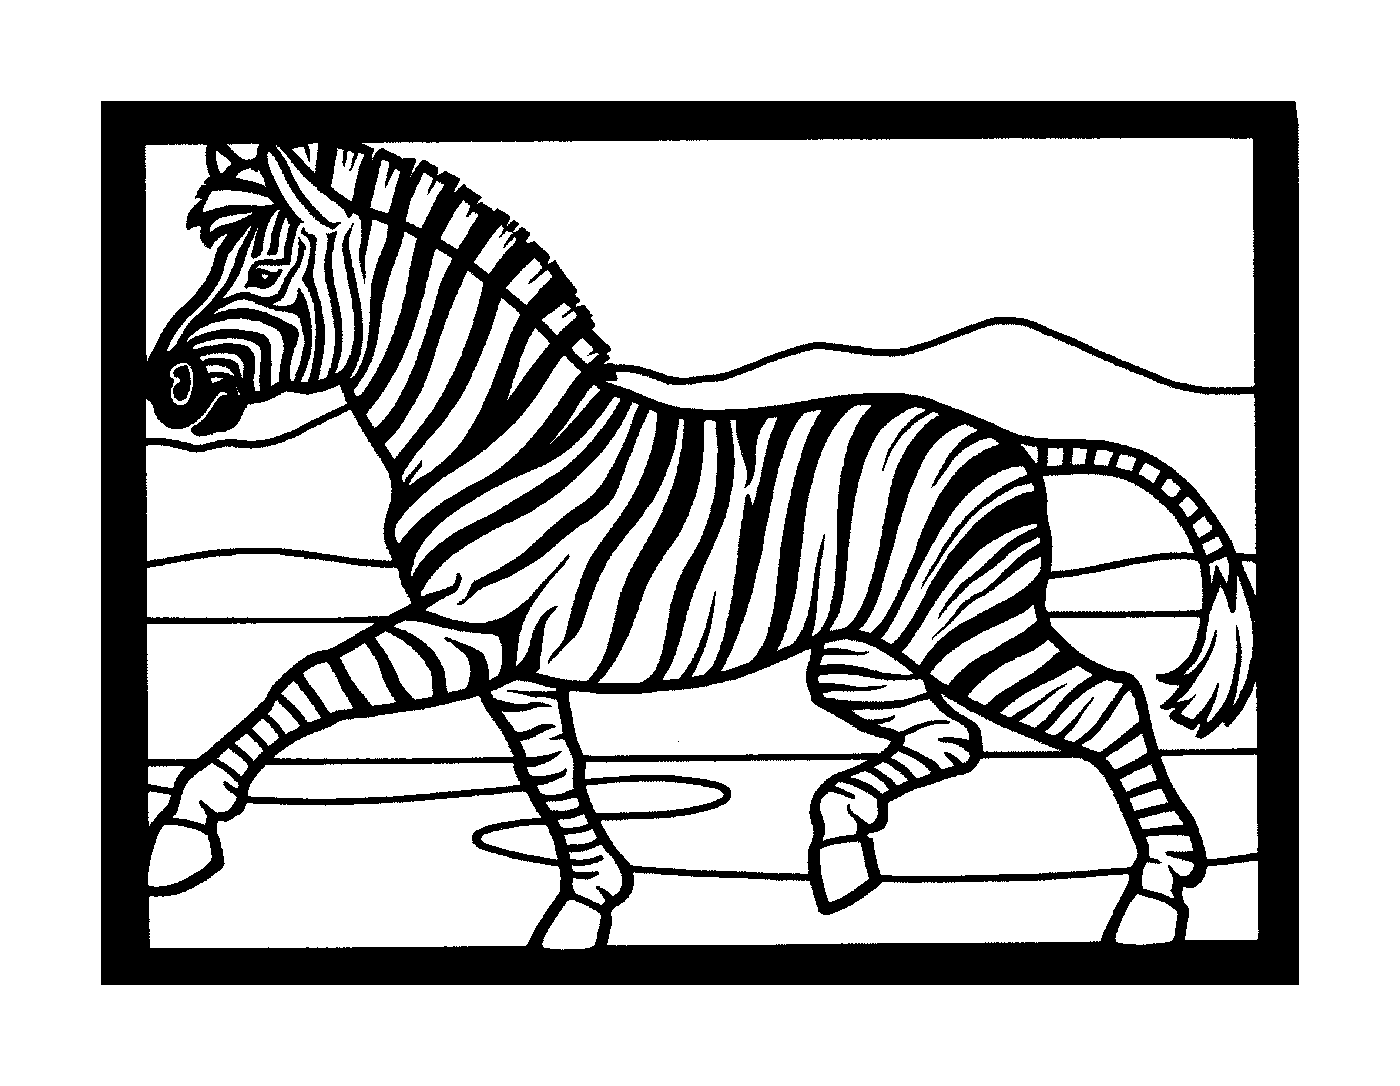  Rápido Zebra en medio de la carrera 